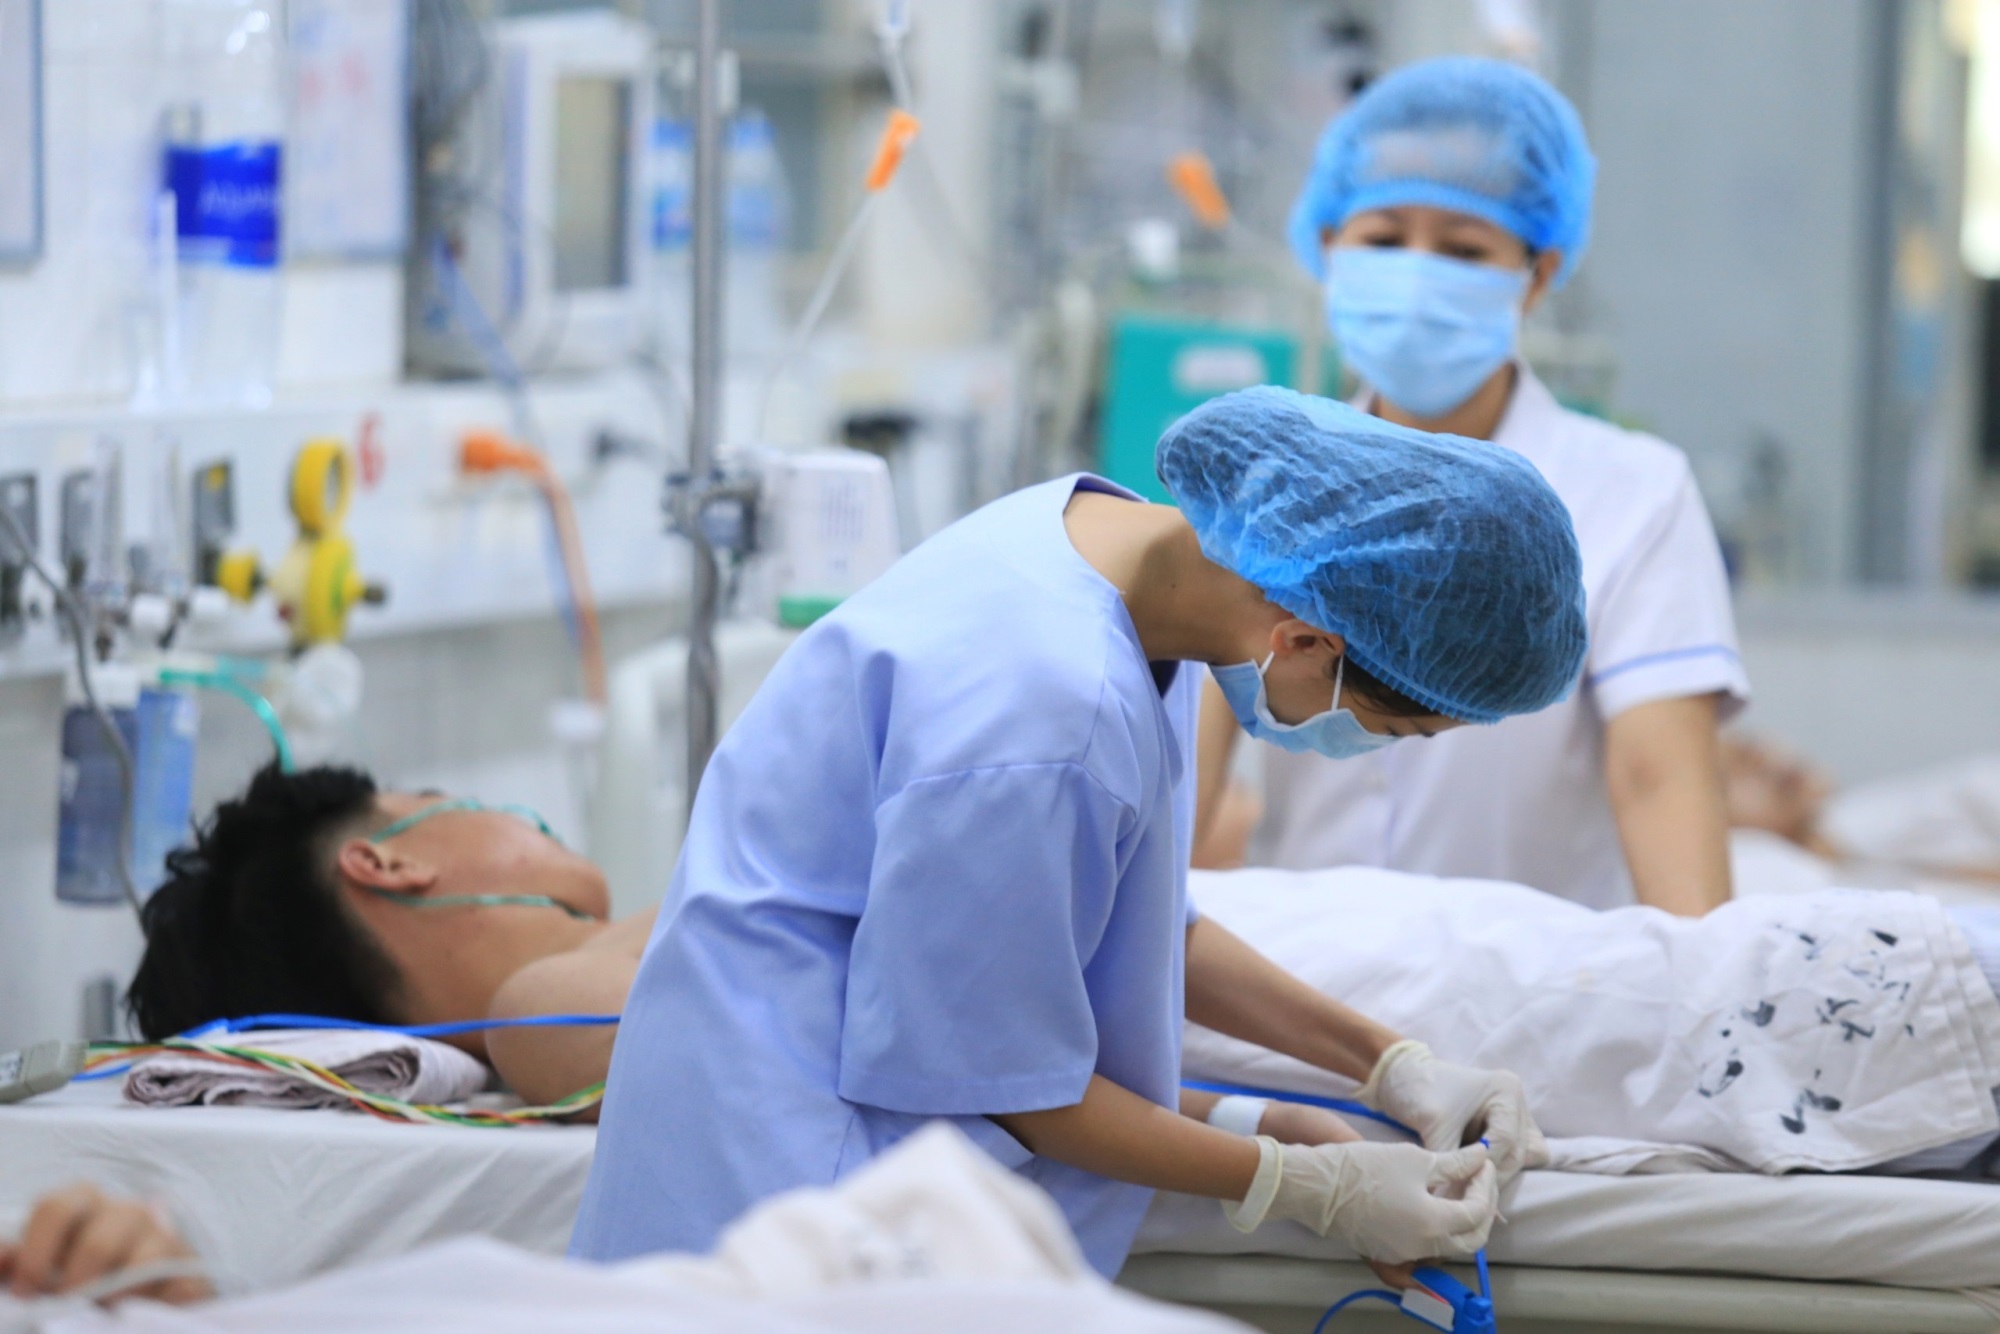 Ca mắc sốt xuất huyết ở Hà Nội tăng 5,7 lần so với năm ngoái, Cục Y tế dự phòng cử chuyên gia hỗ trợ chuyên môn - Ảnh 1